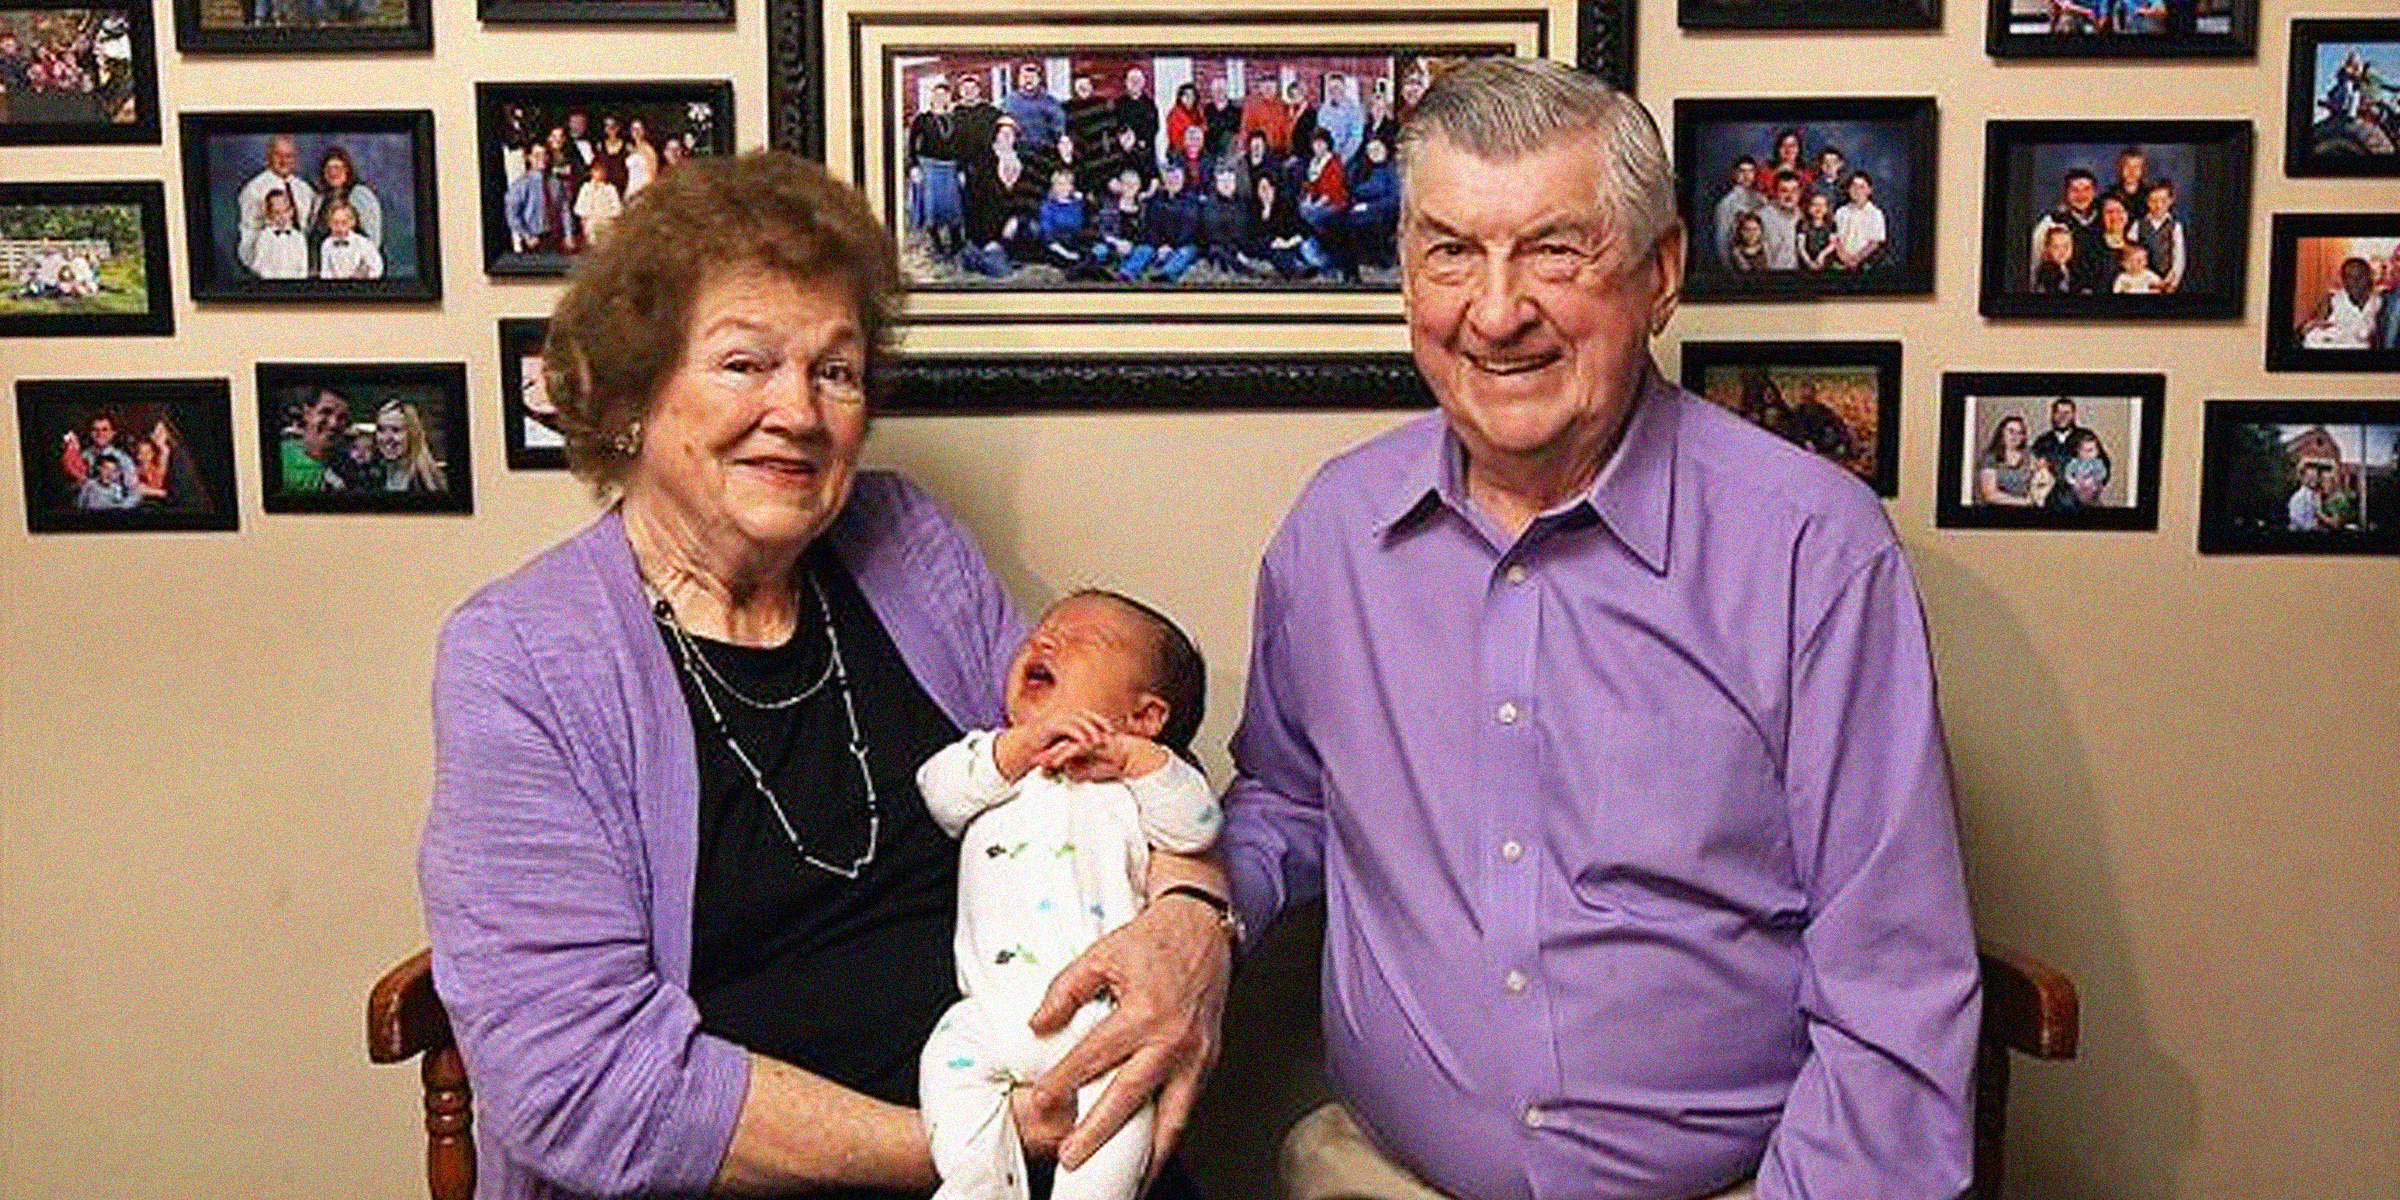 Leo et Ruth Zanger avec leur 100ème petit-fils Jaxton. | Source : Facebook/TV Anouvelles